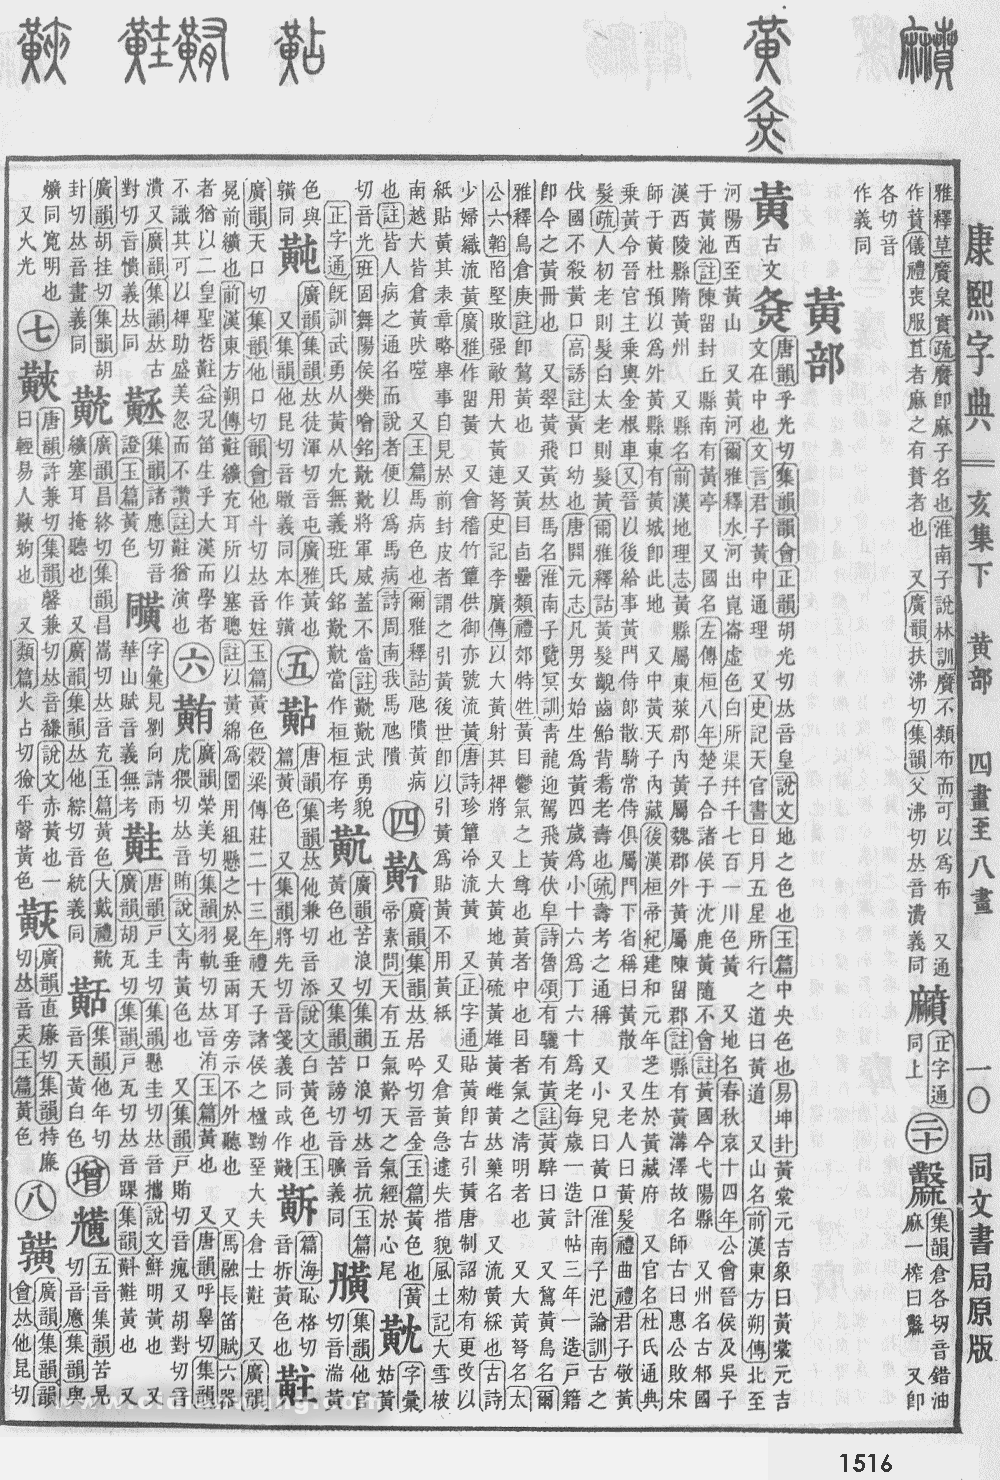 康熙字典掃描版第1516頁